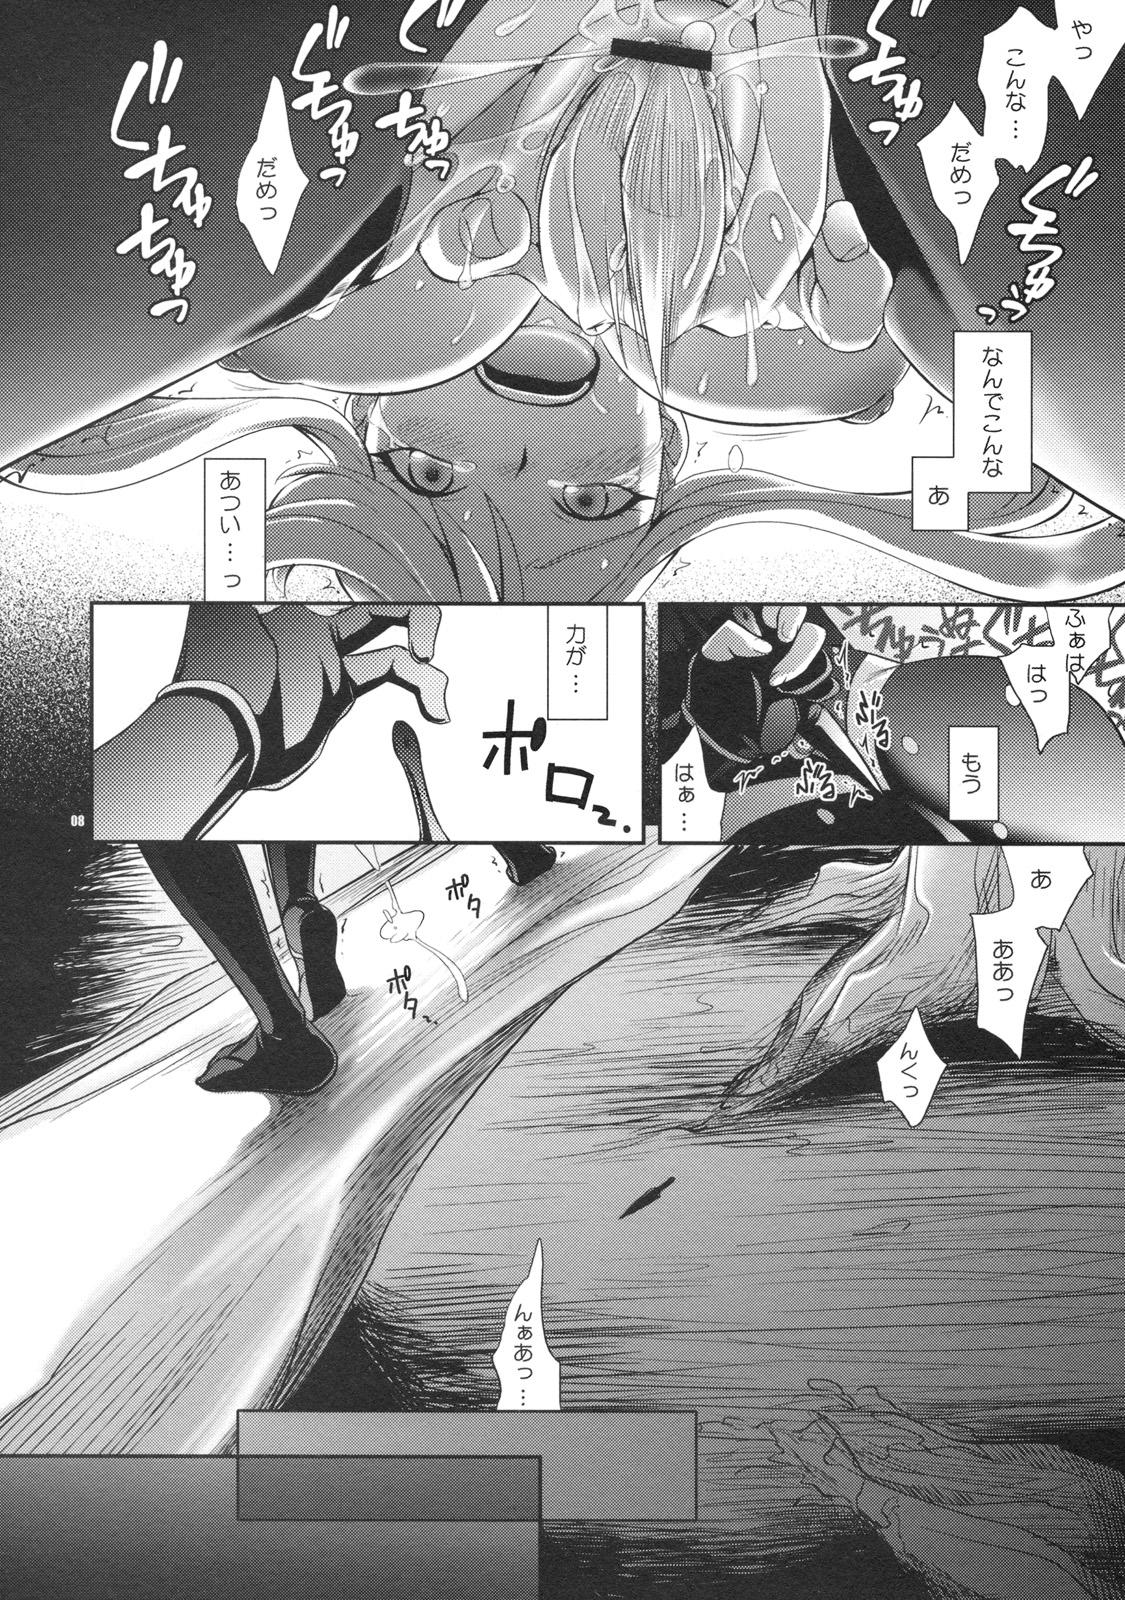 Brazilian Oosame Kudasai Kenshin-sama! - Sengoku basara Que - Page 7